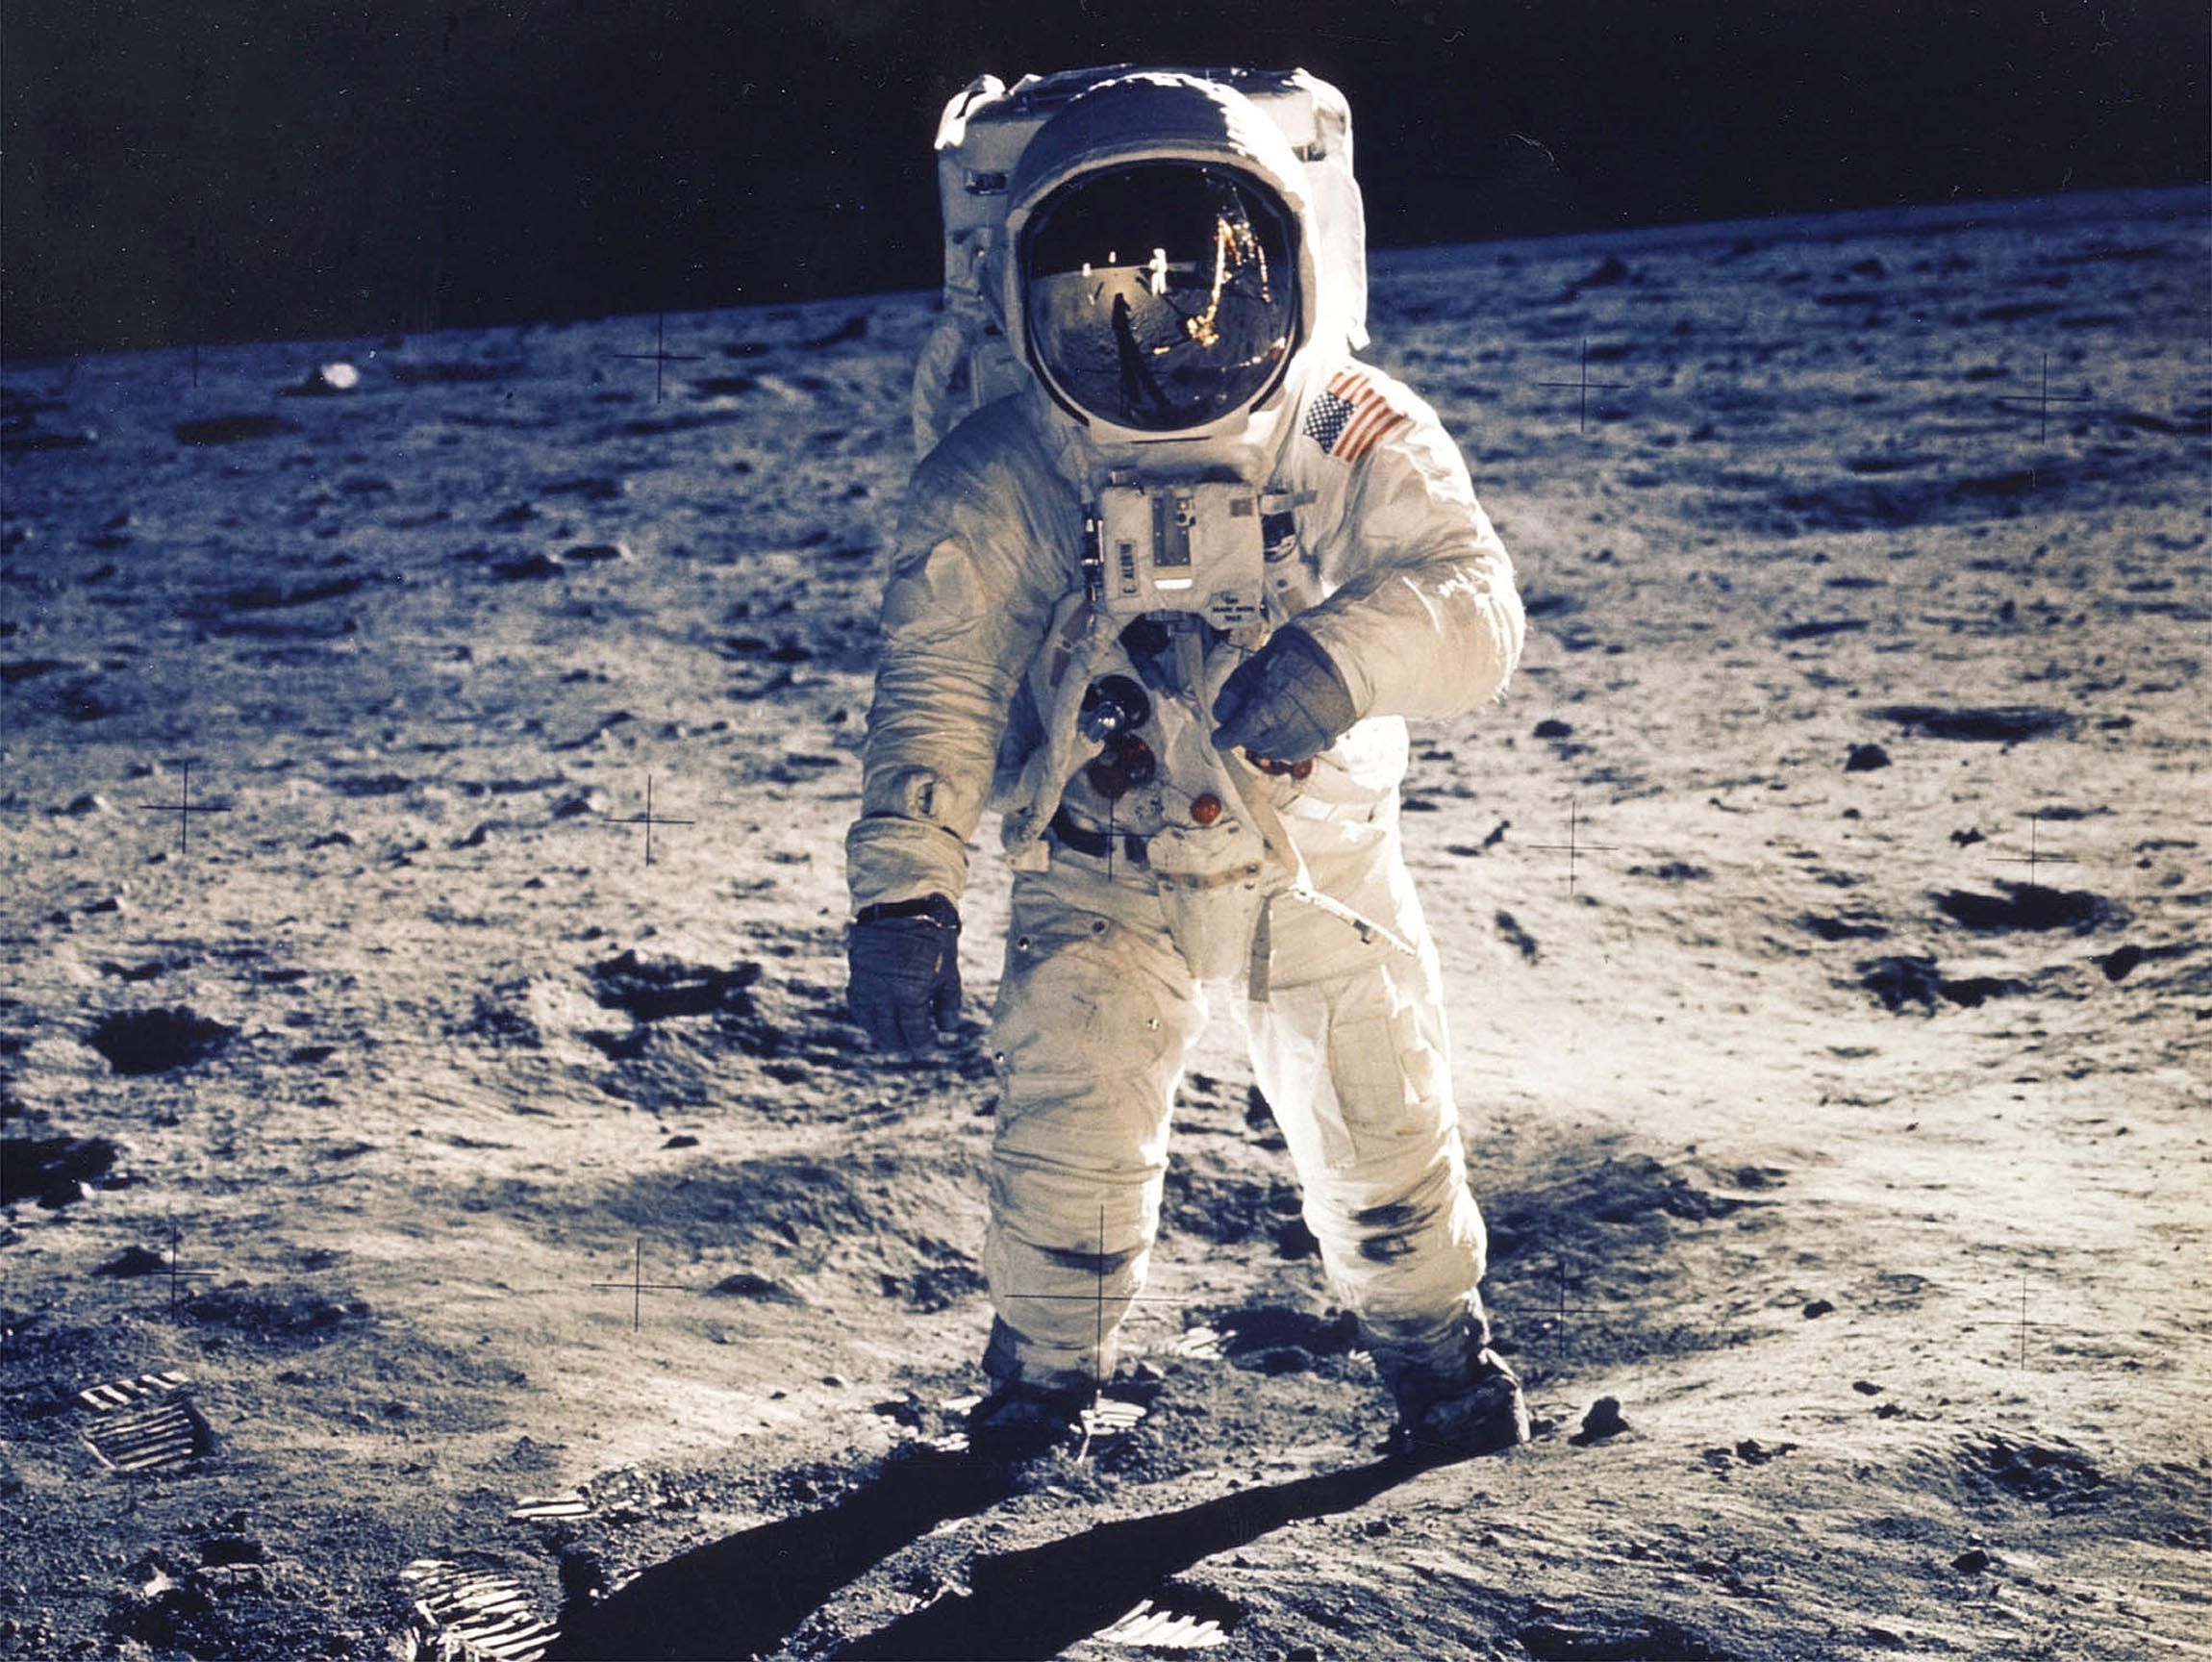 アポロ11号月面着陸ミッション、心を打つ写真の数々